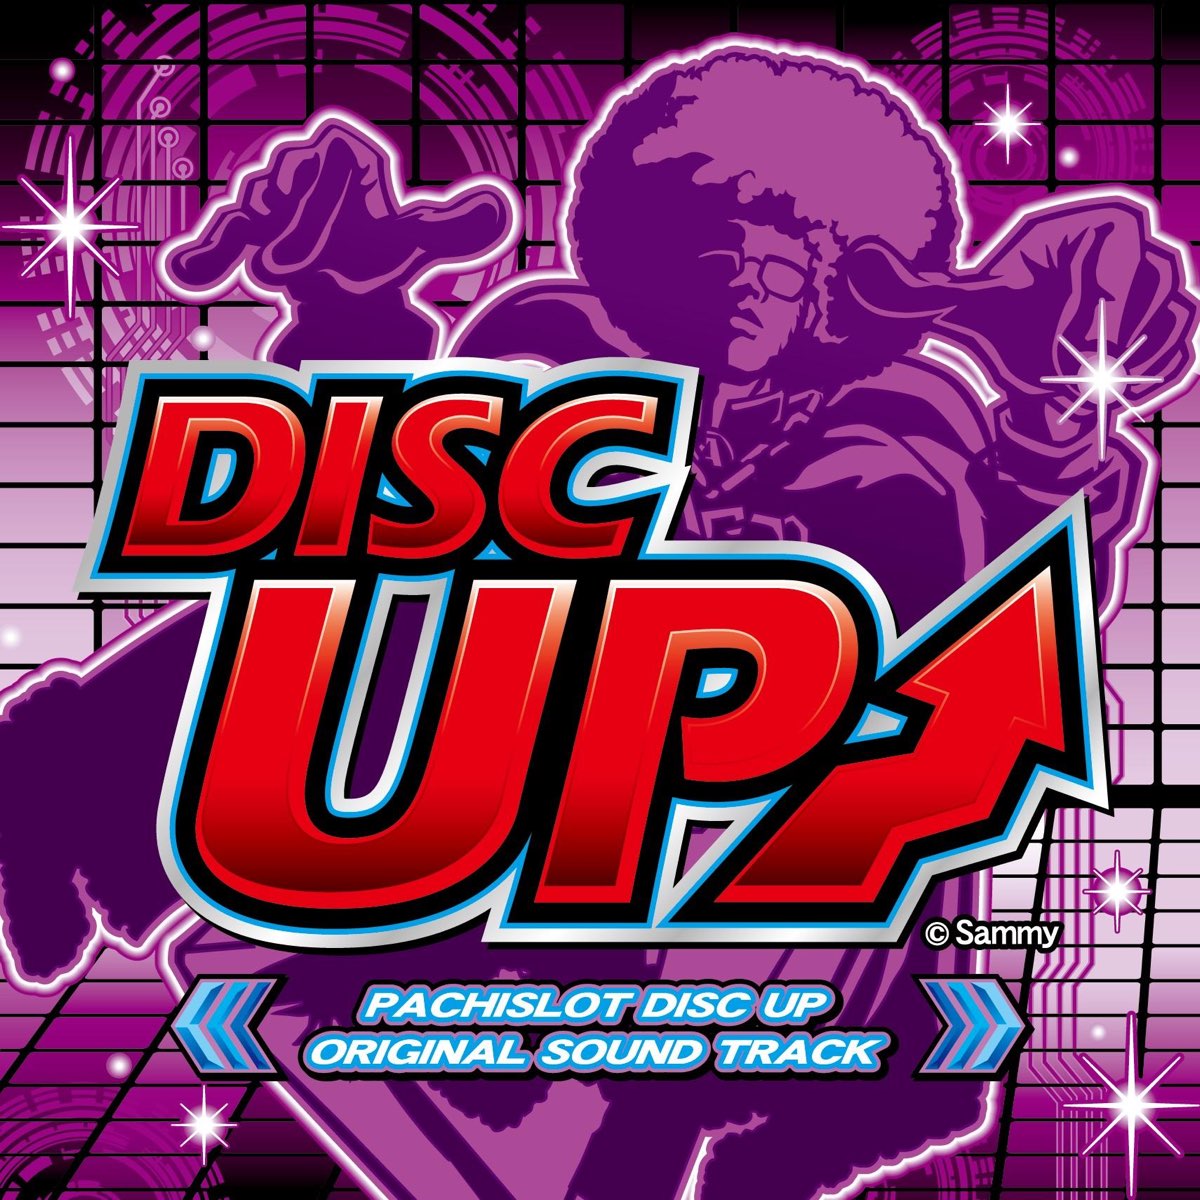 Pachislot Disc Up Original Sound Track - Album by Sammy sound team